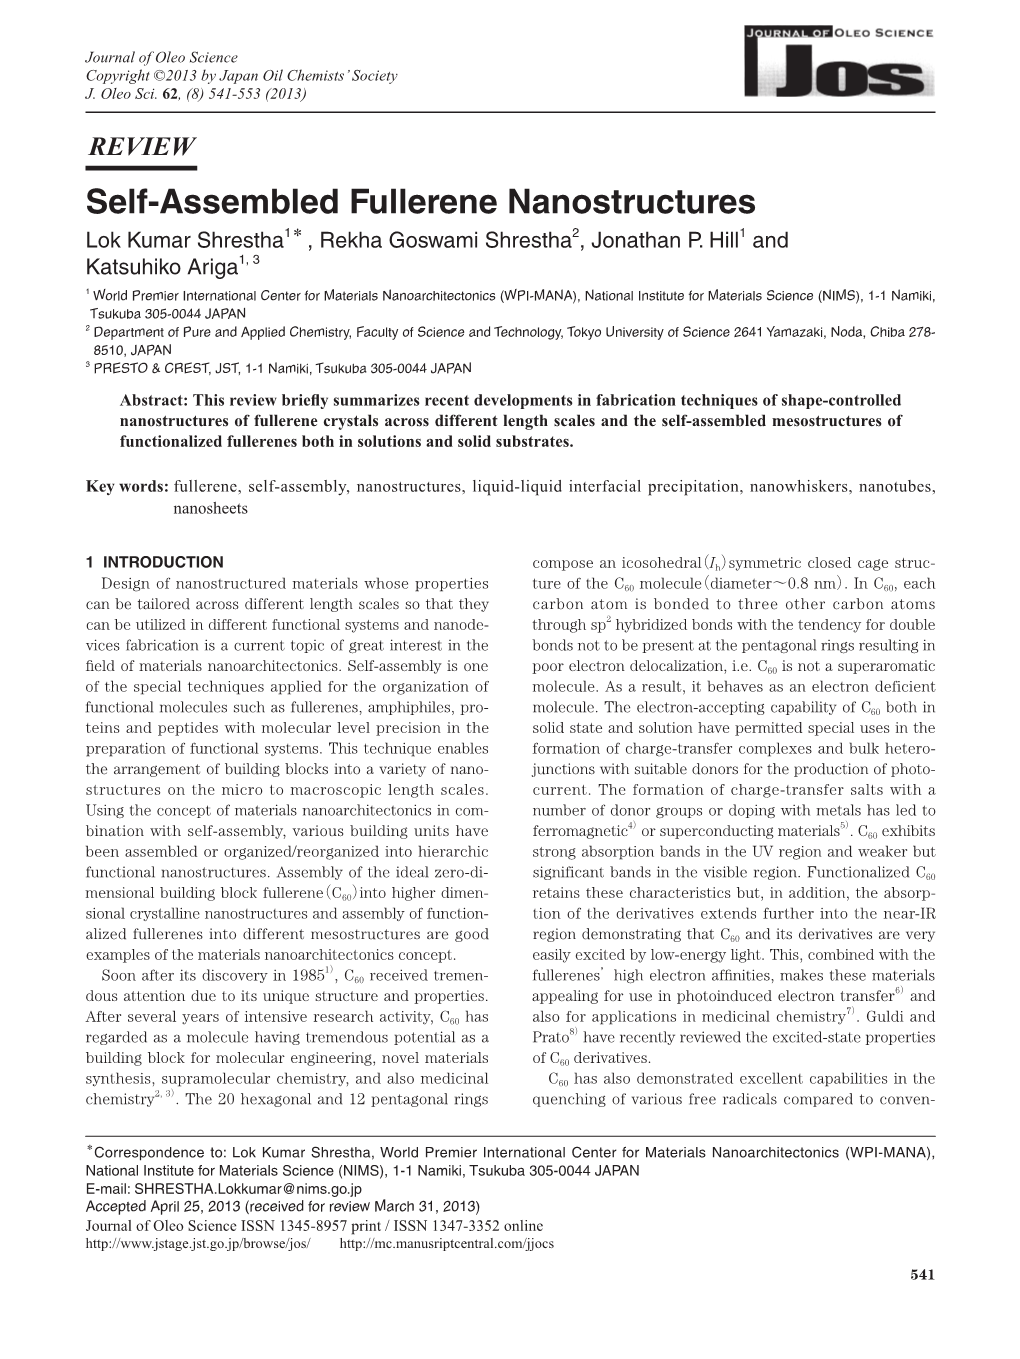 Self-Assembled Fullerene Nanostructures Lok Kumar Shrestha1＊ , Rekha Goswami Shrestha2, Jonathan P